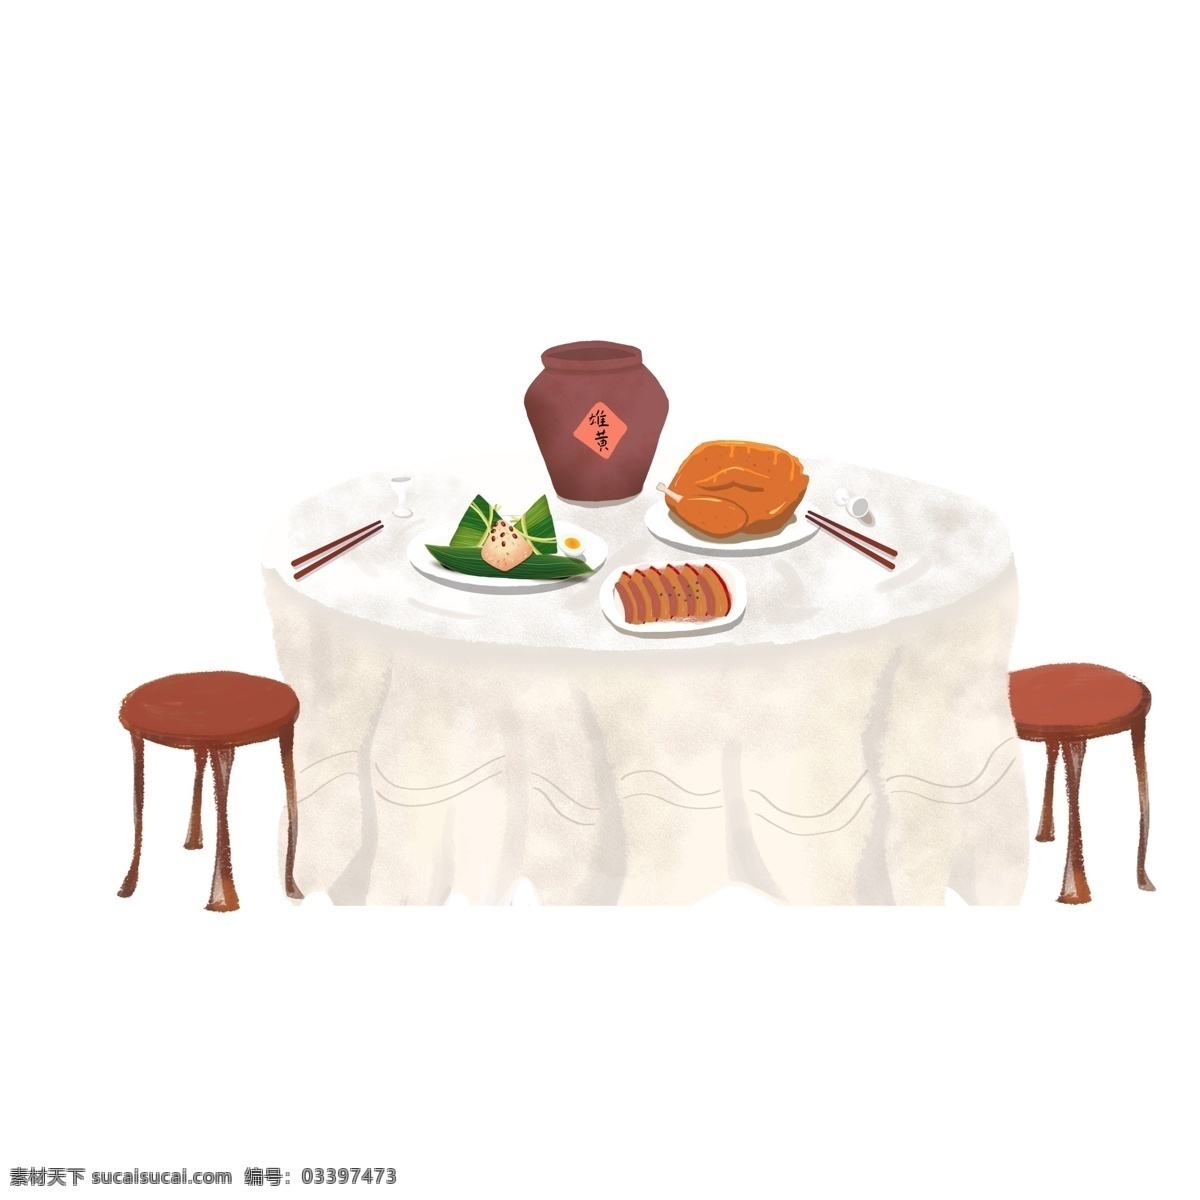 端午节 桌子 上 食物 插画 手绘 雄黄酒 粽子 椅子 一桌饭菜 卡通设计